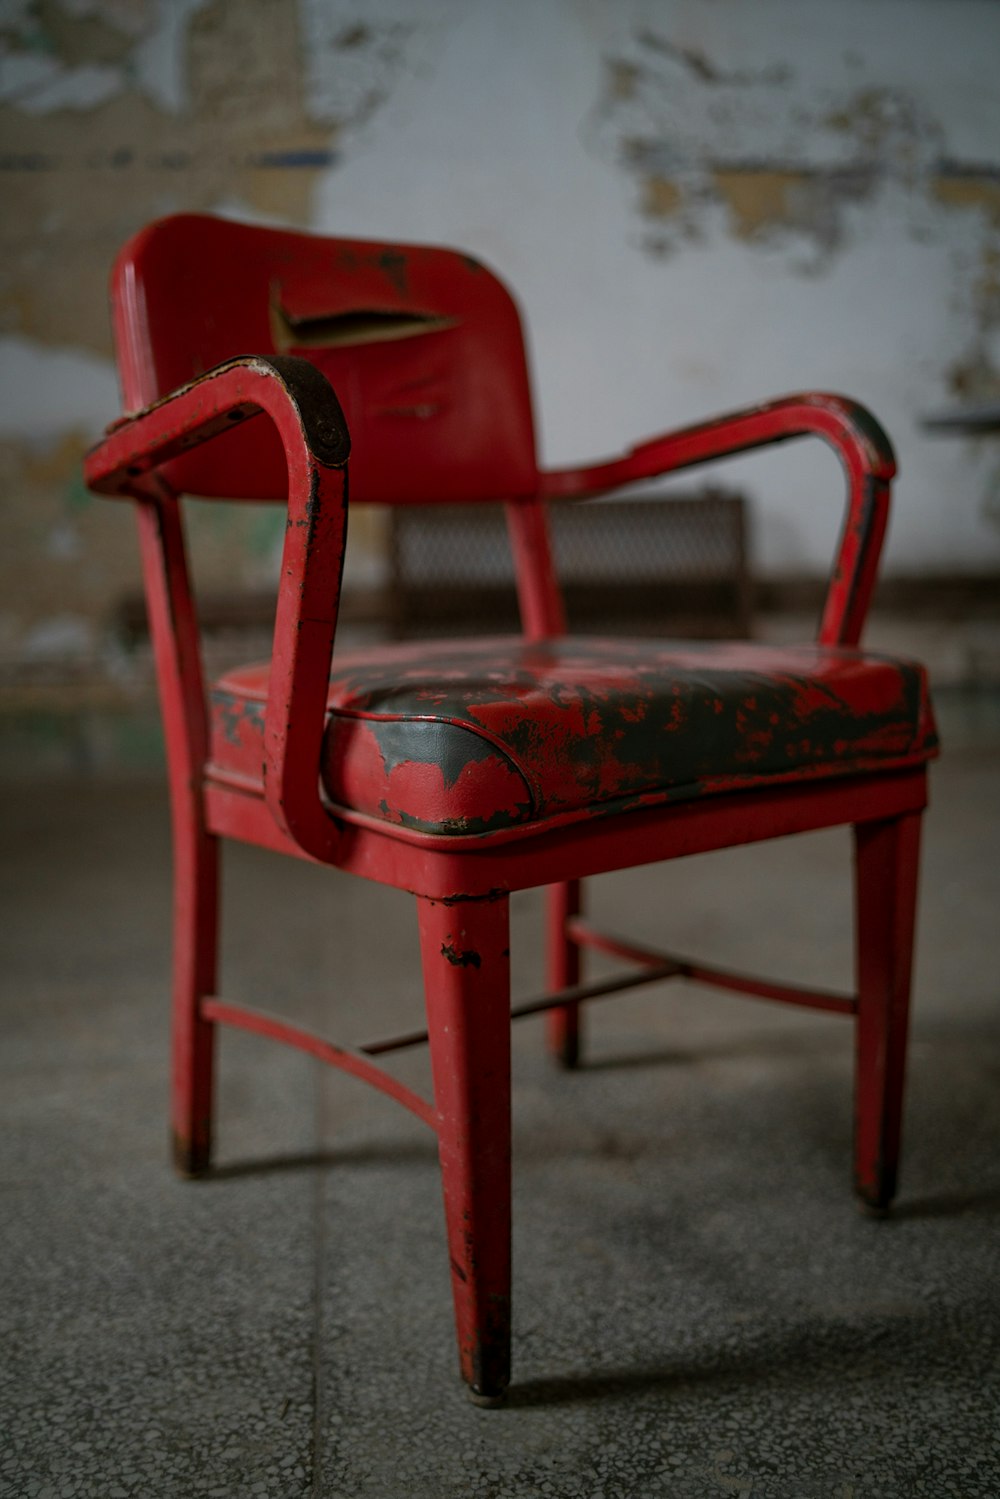 sillón de plástico rojo sobre suelo de hormigón gris